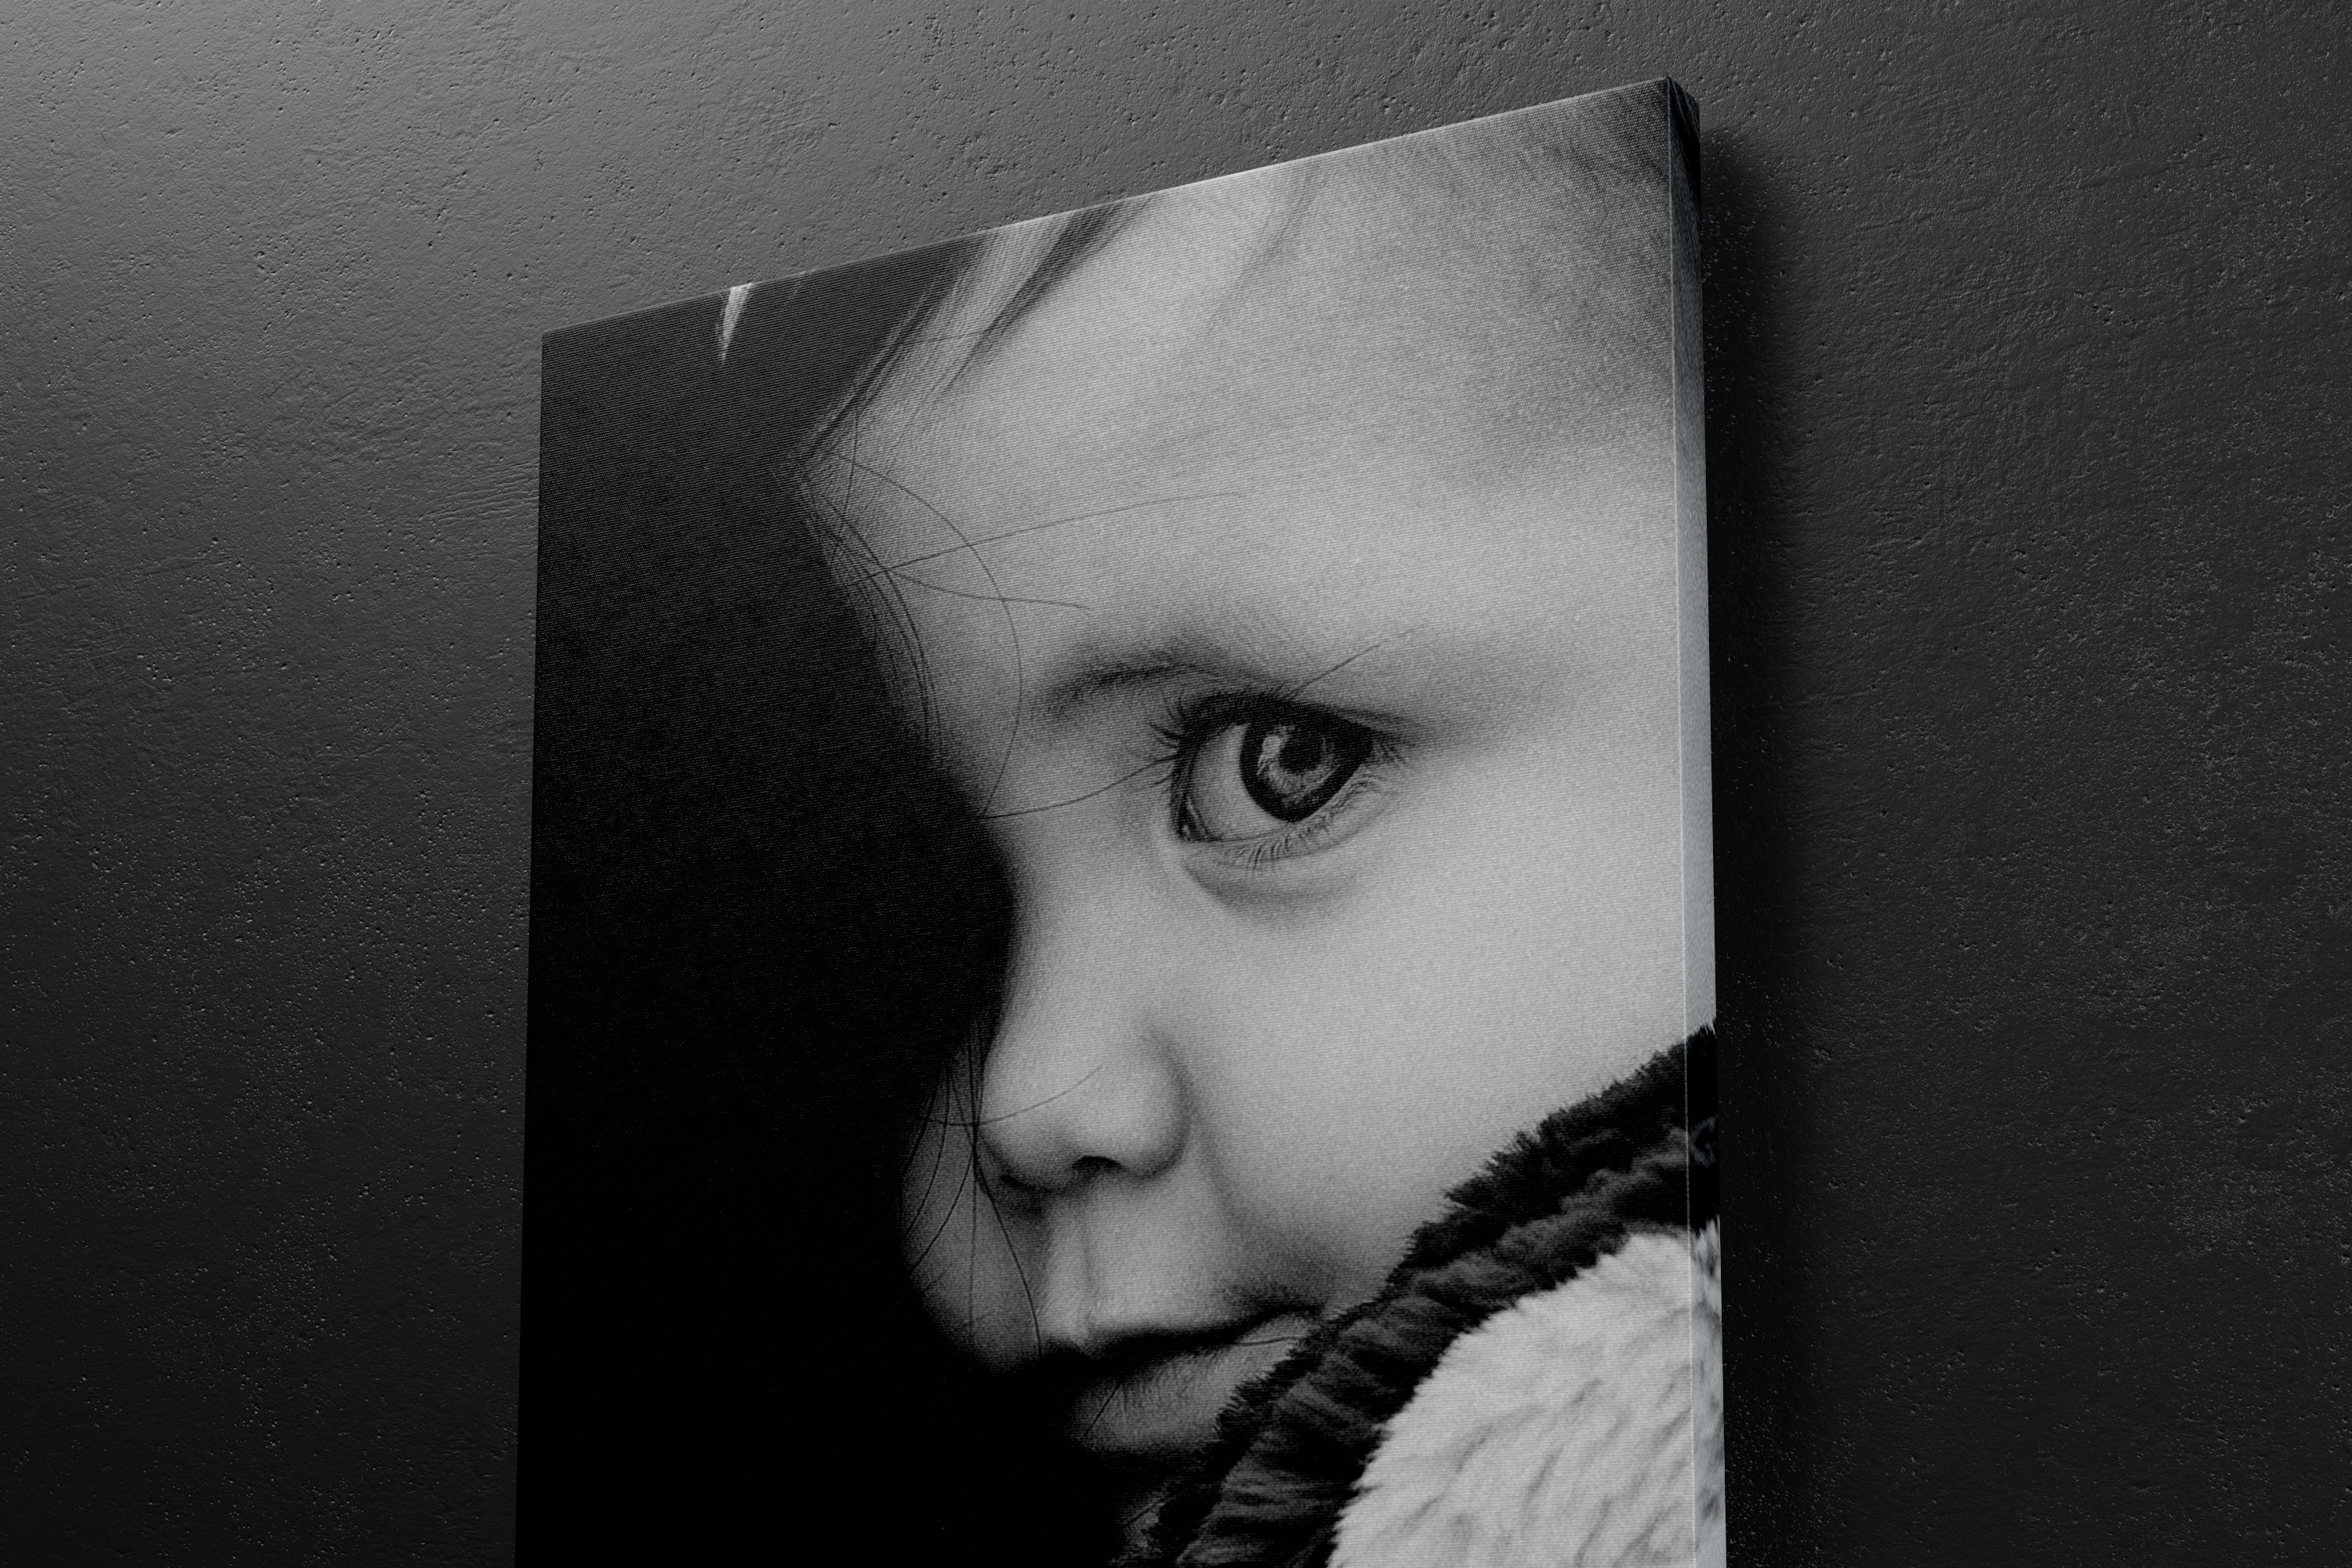 挂墙艺术画像展览画框右视图样机模板素材 2:3 Portrait Canvas Mockup Hanging on Wall, Right View插图(6)